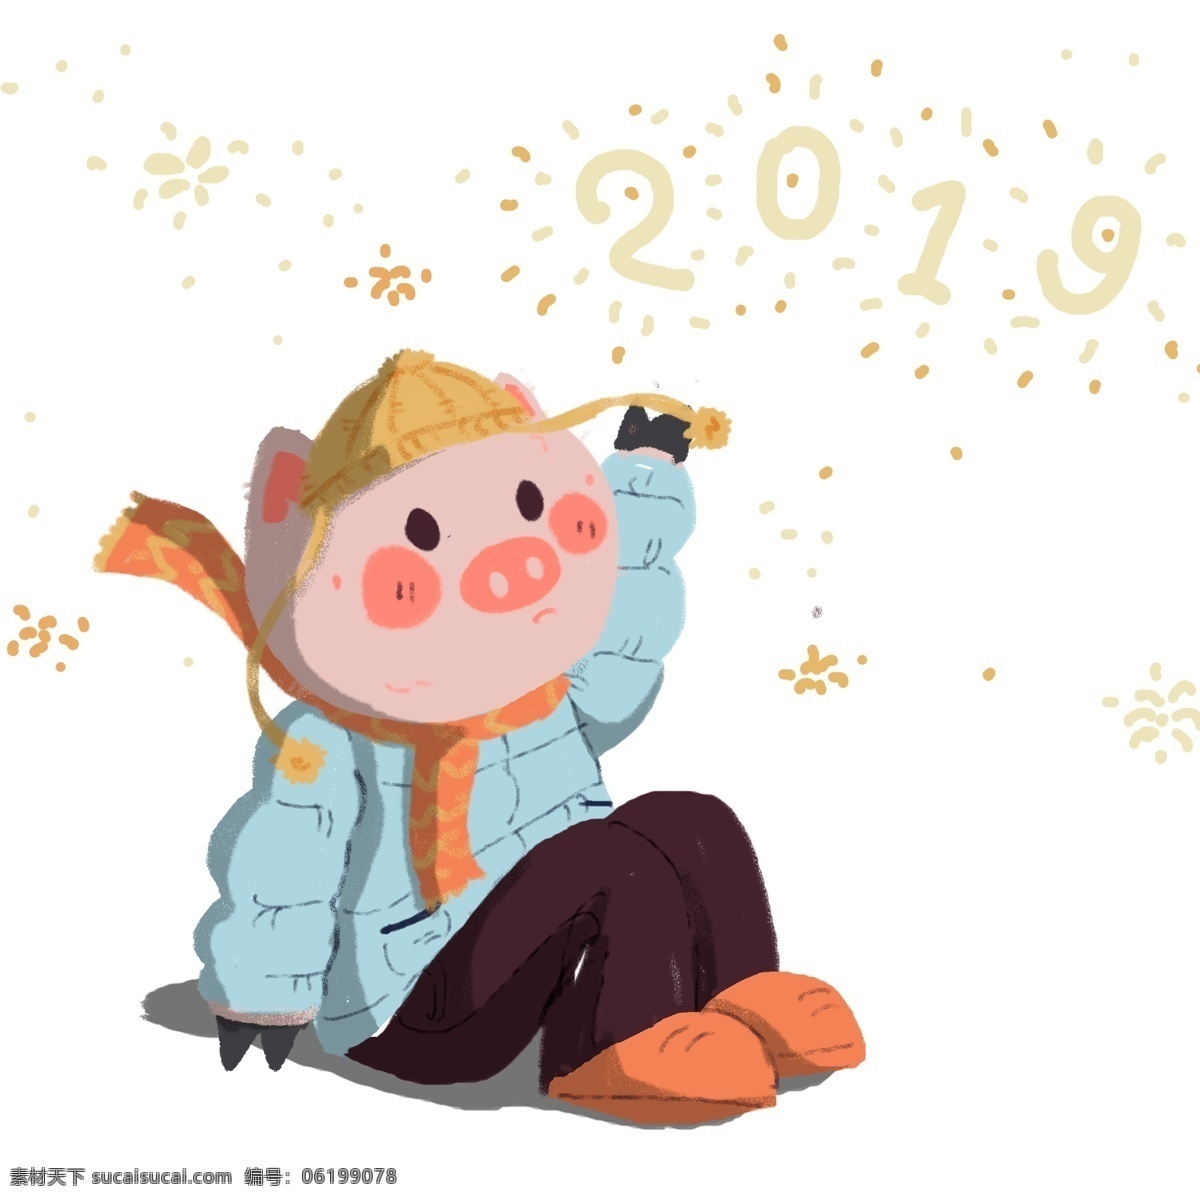 2019 手绘 过年 小 猪 卡通 小猪 烟花 插画 猪猪 猪年元素